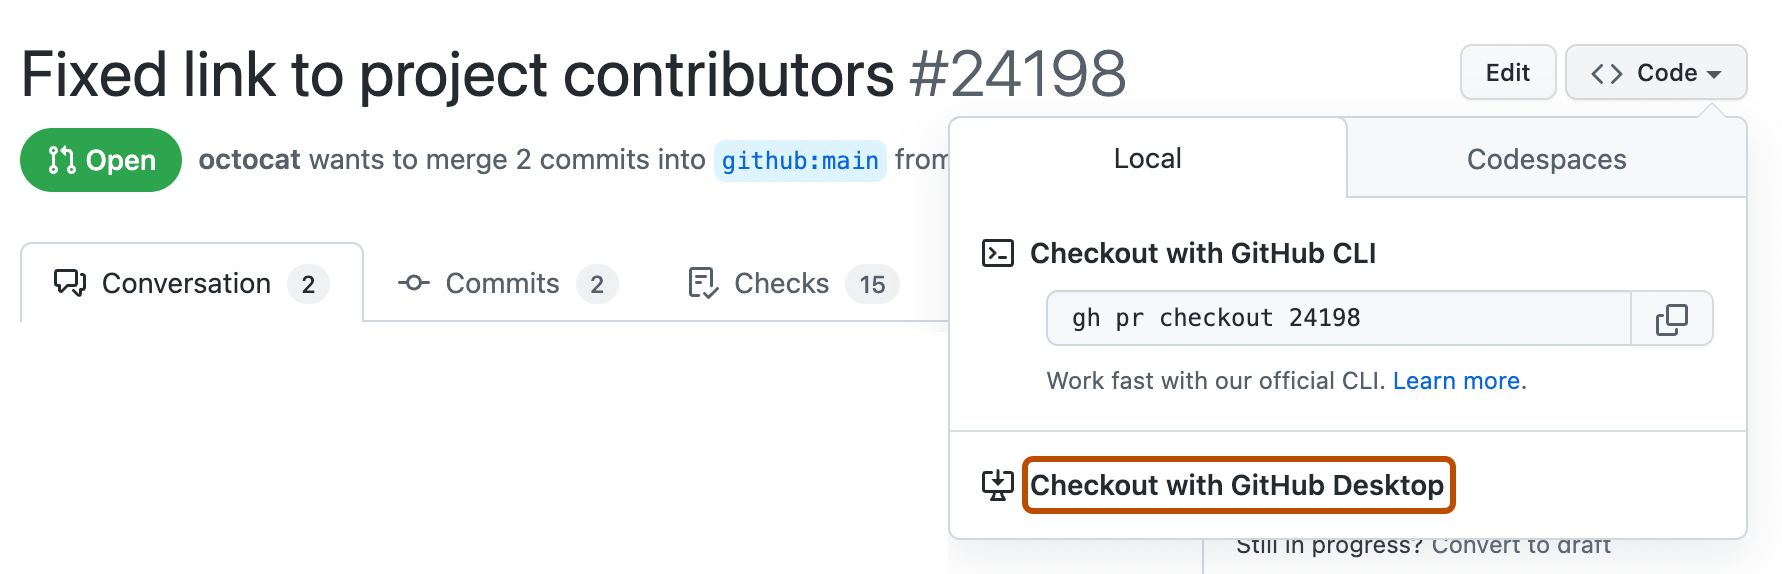 Снимок экрана: запрос на вытягивание на GitHub. Раскрывающееся меню "Код" развернуто, а кнопка с надписью "Checkout with GitHub Desktop" выделена оранжевым цветом.